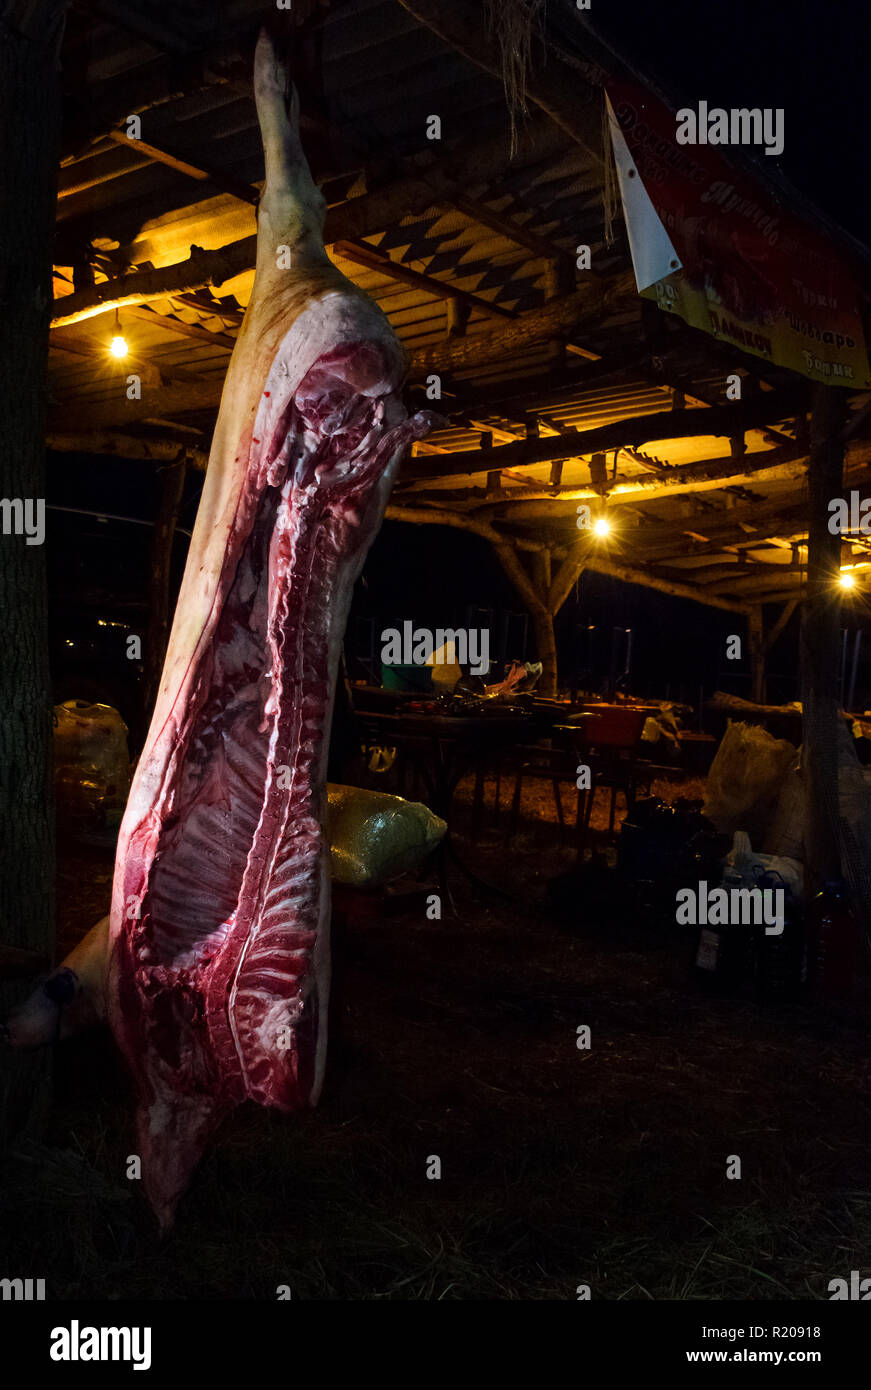 Hecha, Ukraine - Jan 27, 2018: Schweinefleisch Metzger Wettbewerb. Aas hängen in der Dunklen. Vorbereitung für das Festival in der Nacht Stockfoto